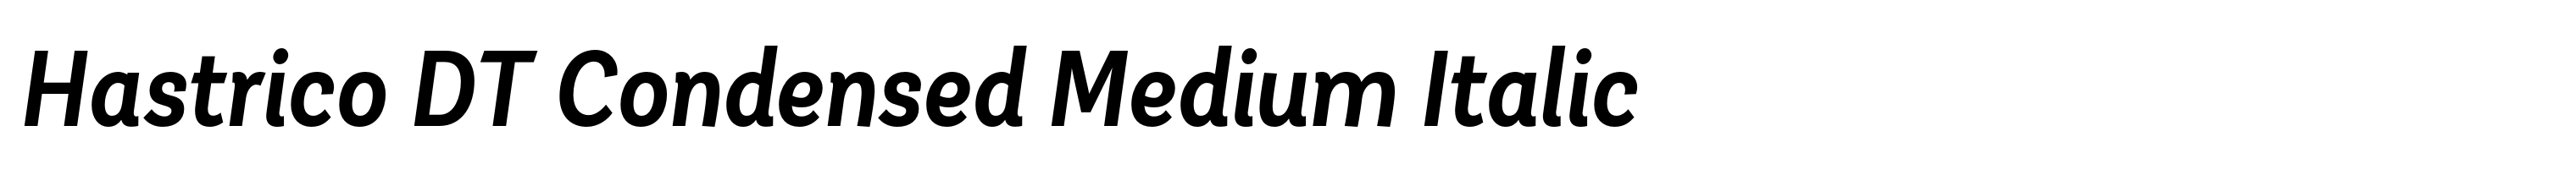 Hastrico DT Condensed Medium Italic